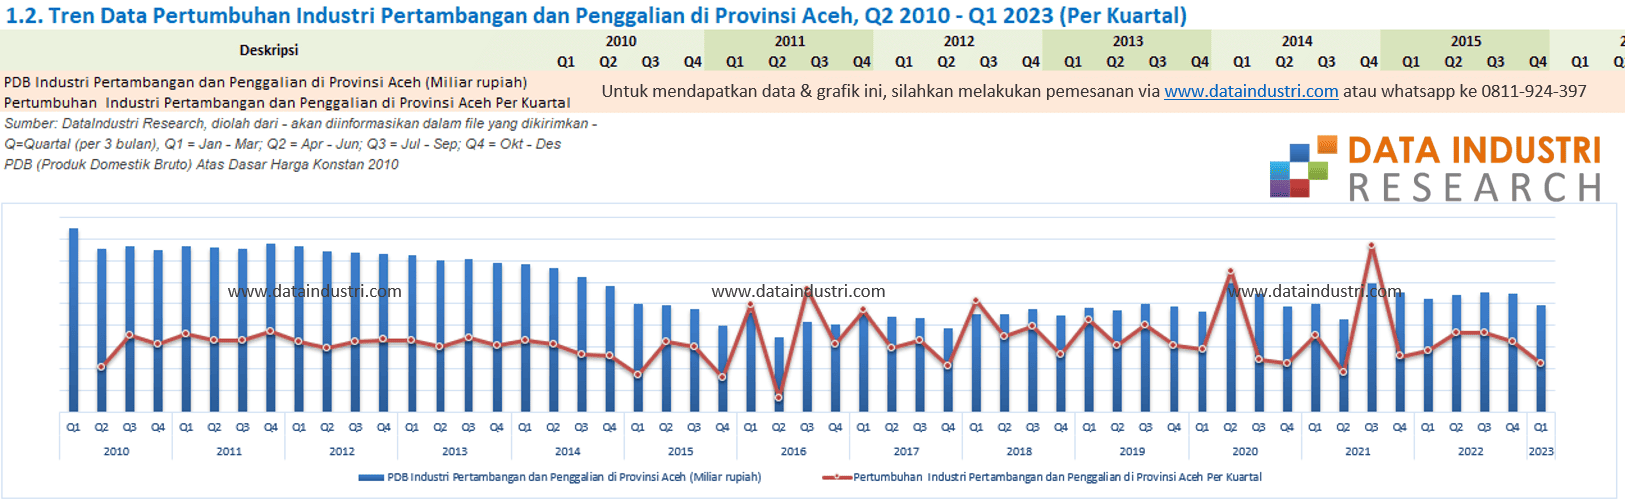 Tren Data Pertumbuhan Industri Pertambangan dan Penggalian di Provinsi Aceh, Q2 2011 - Q1 2023